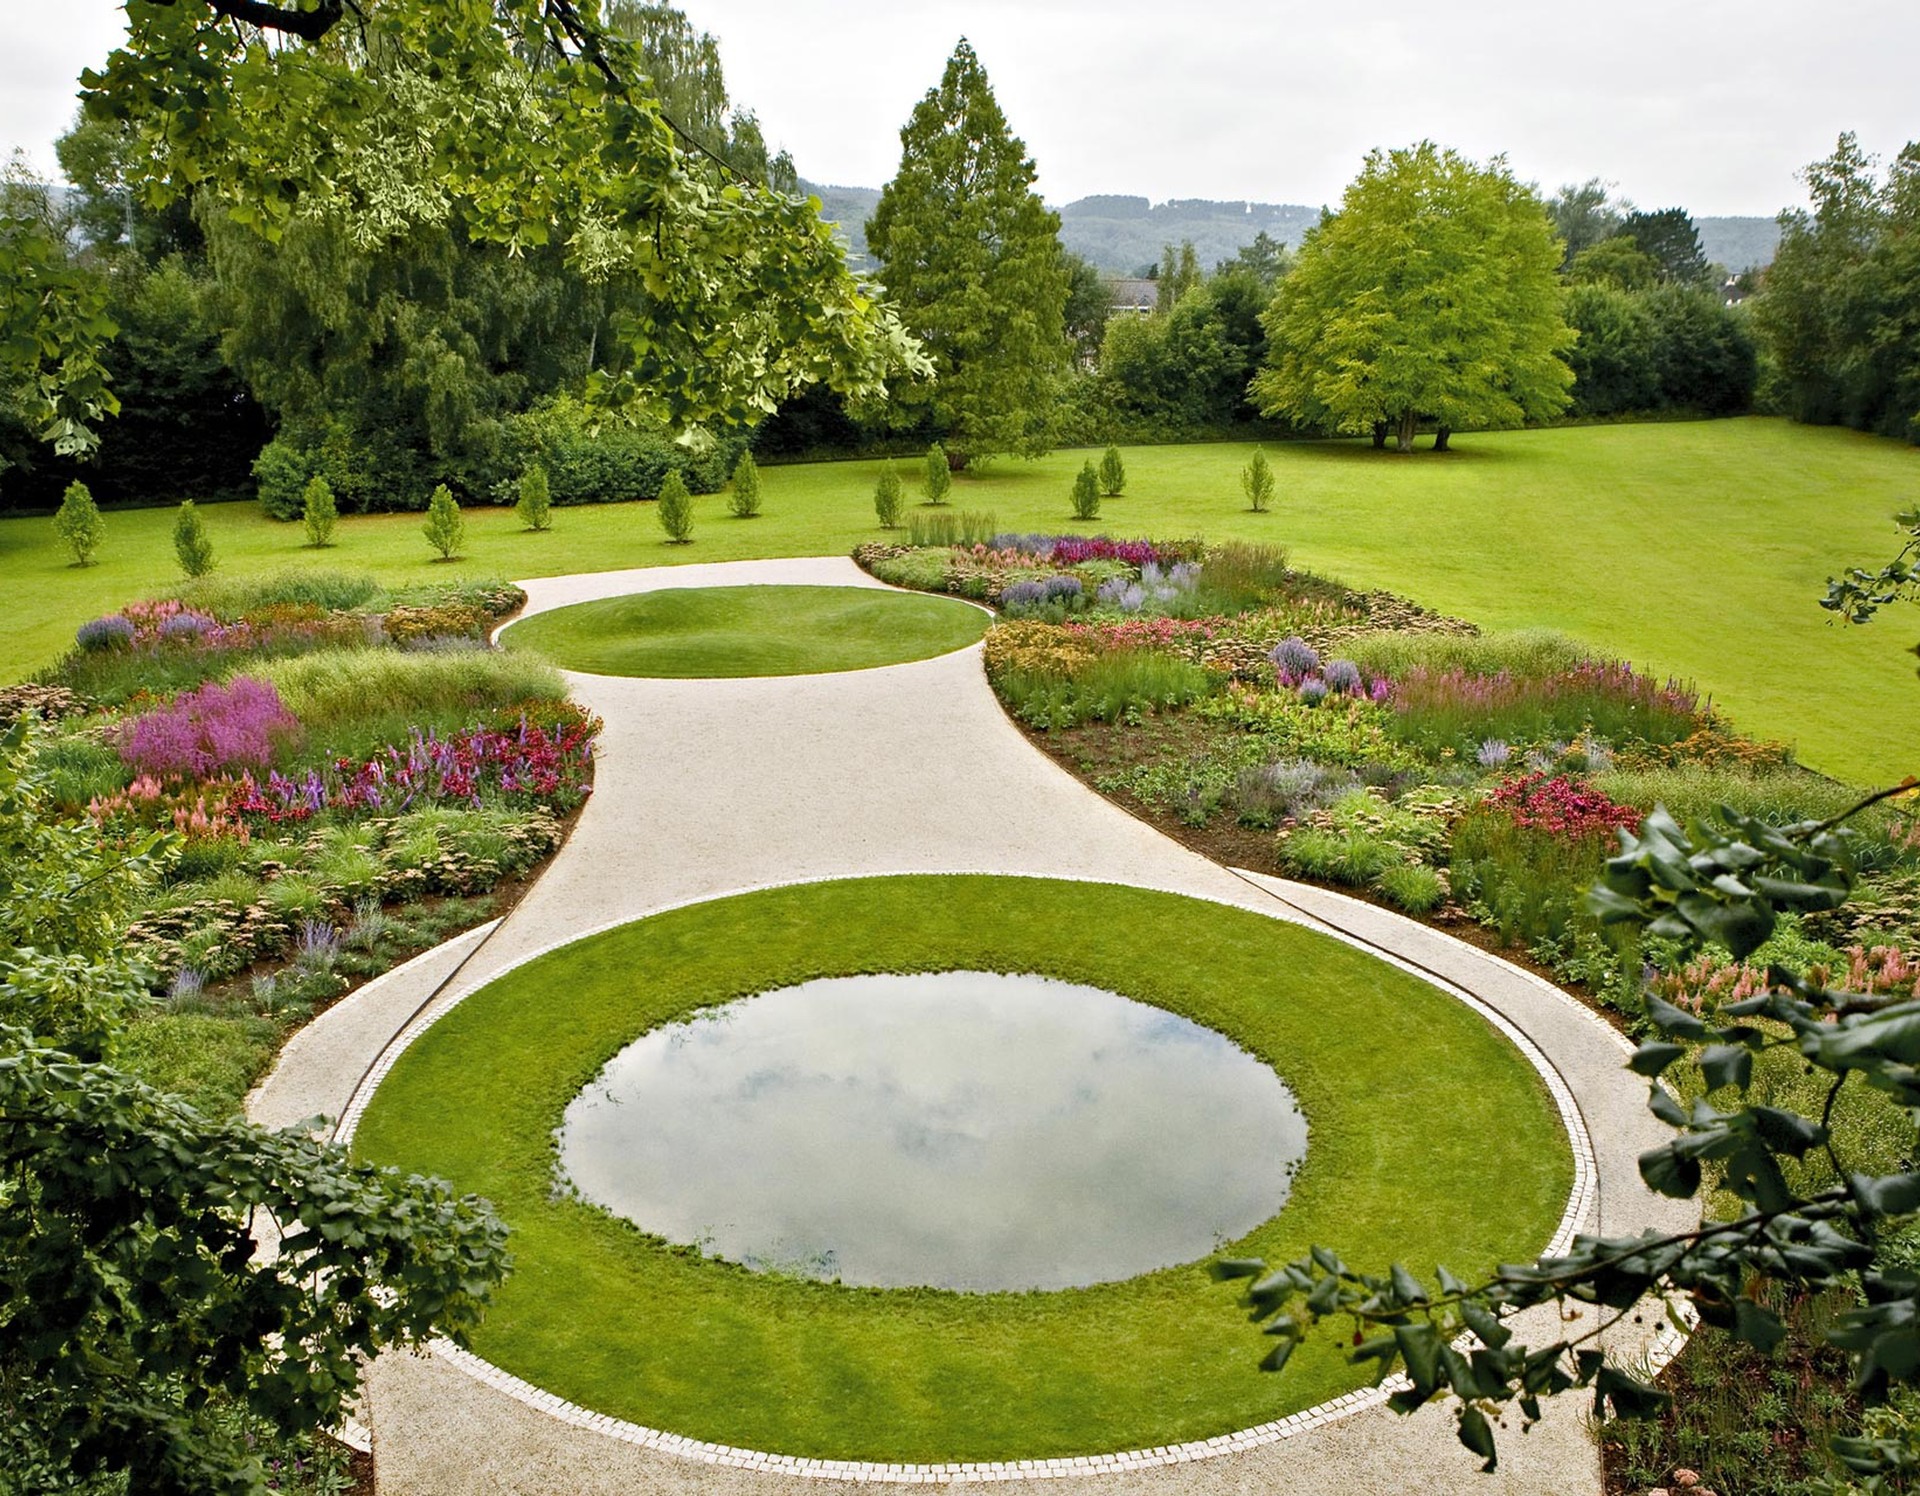 Der Piet-Oudolf-Garten im Gräflichen Park. Dieser Stauden- und Gräsergarten wurde 2009 vom niederländischen Gartenkünstler Piet Oudolf angelegt.